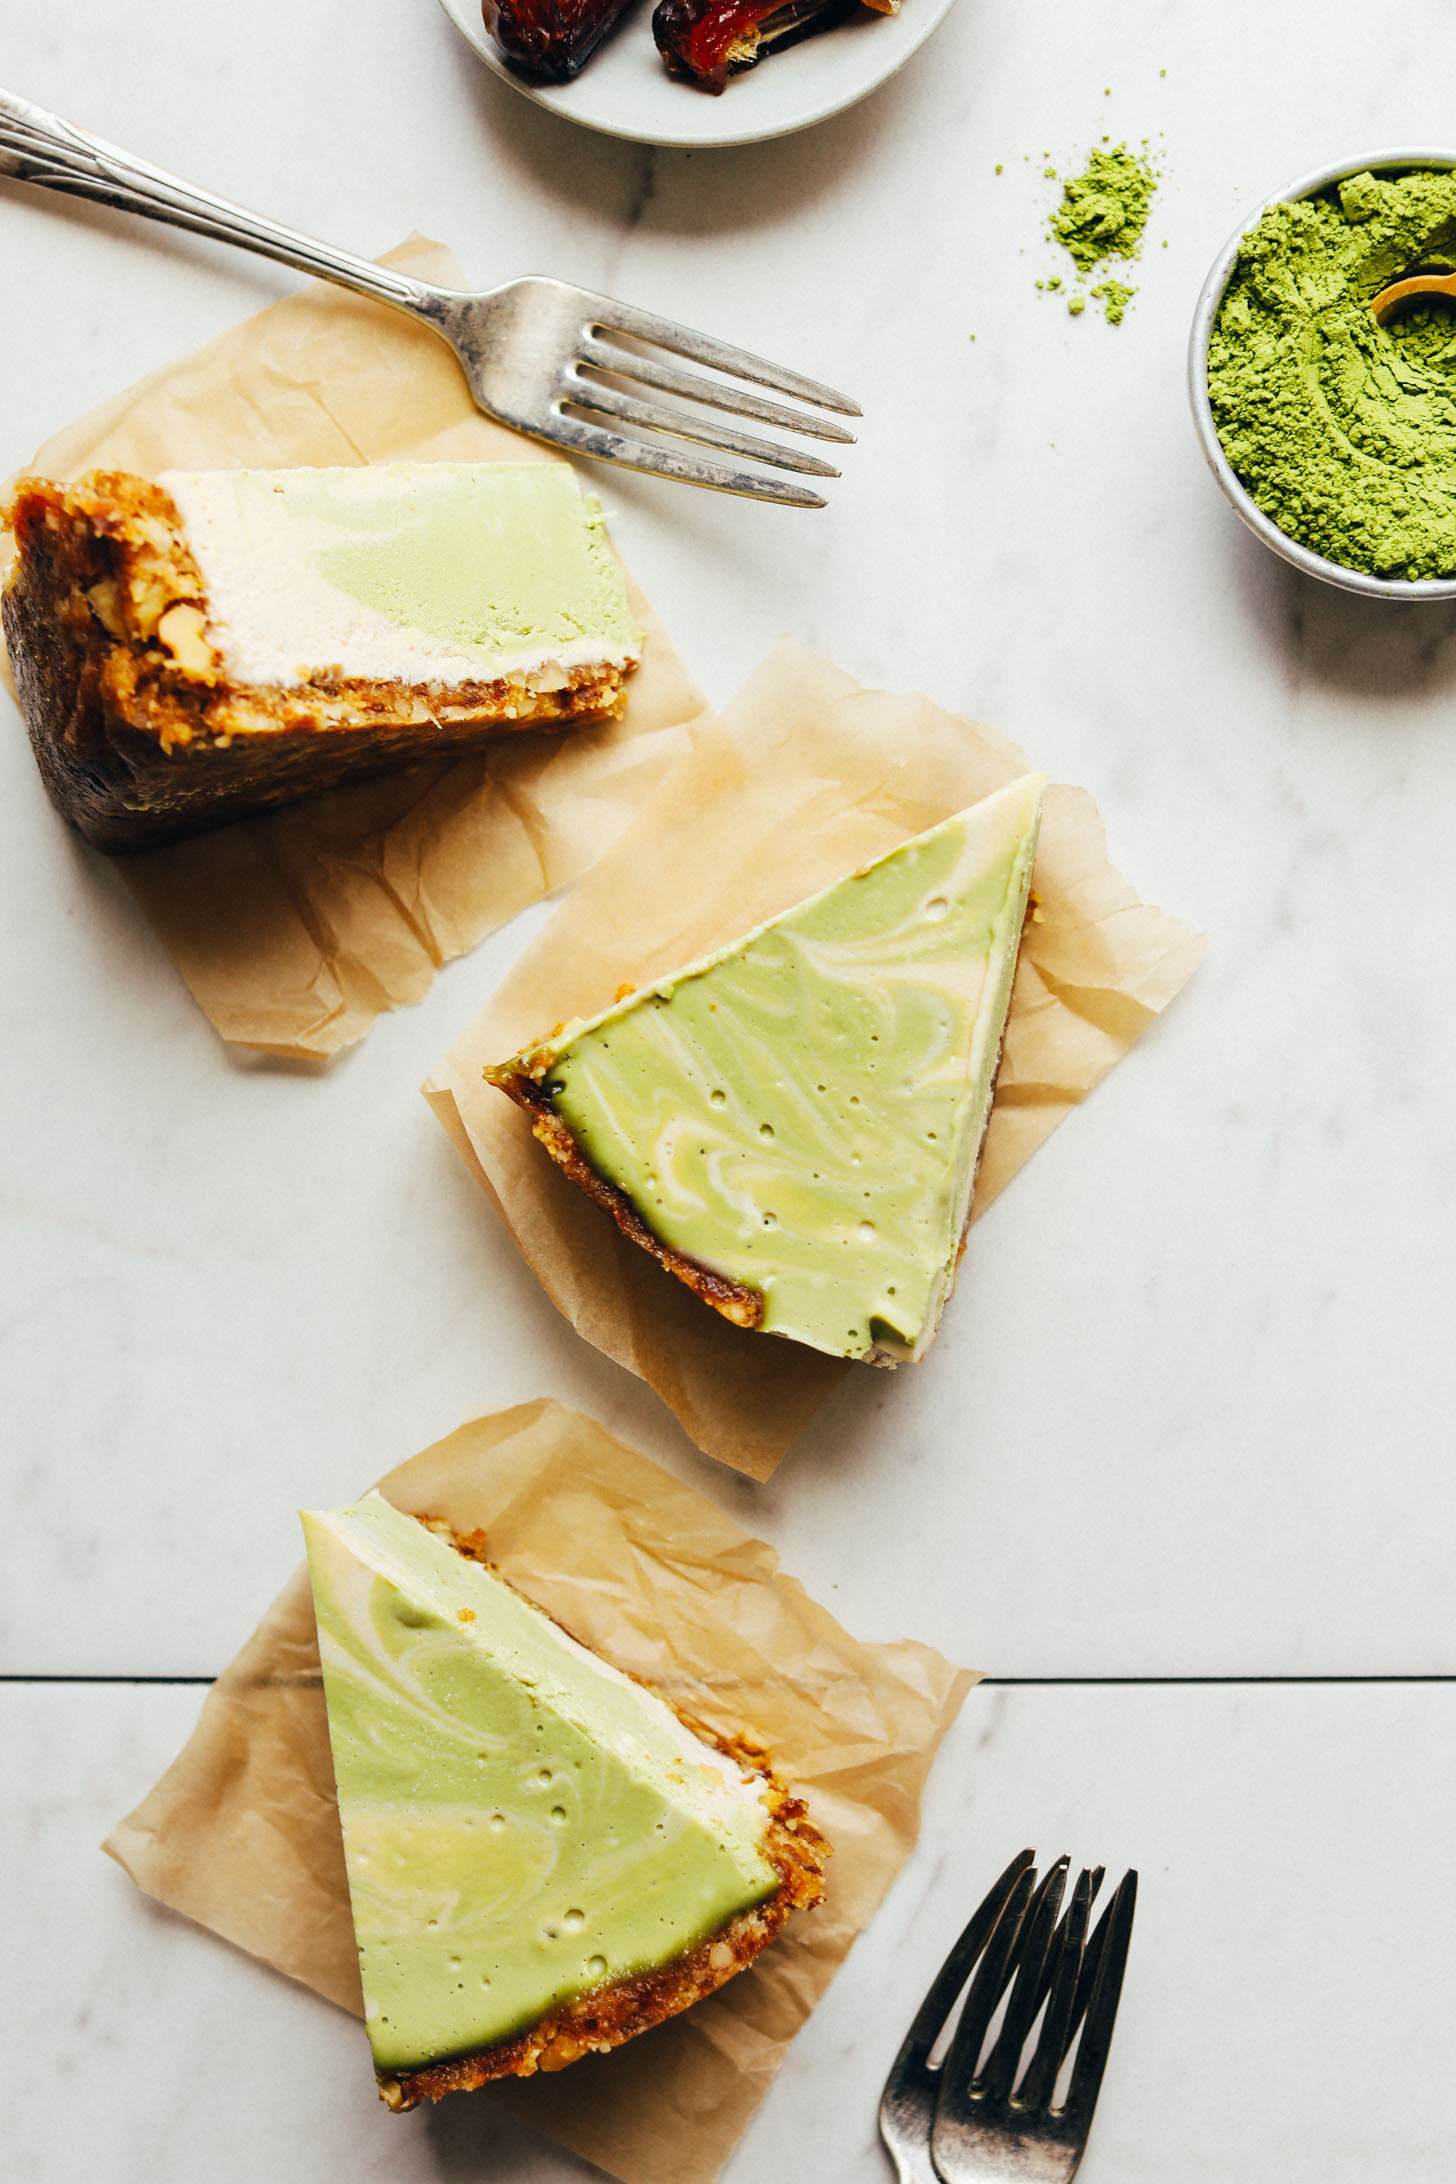 Slices of vegan gluten-free Matcha Swirl Cheesecake